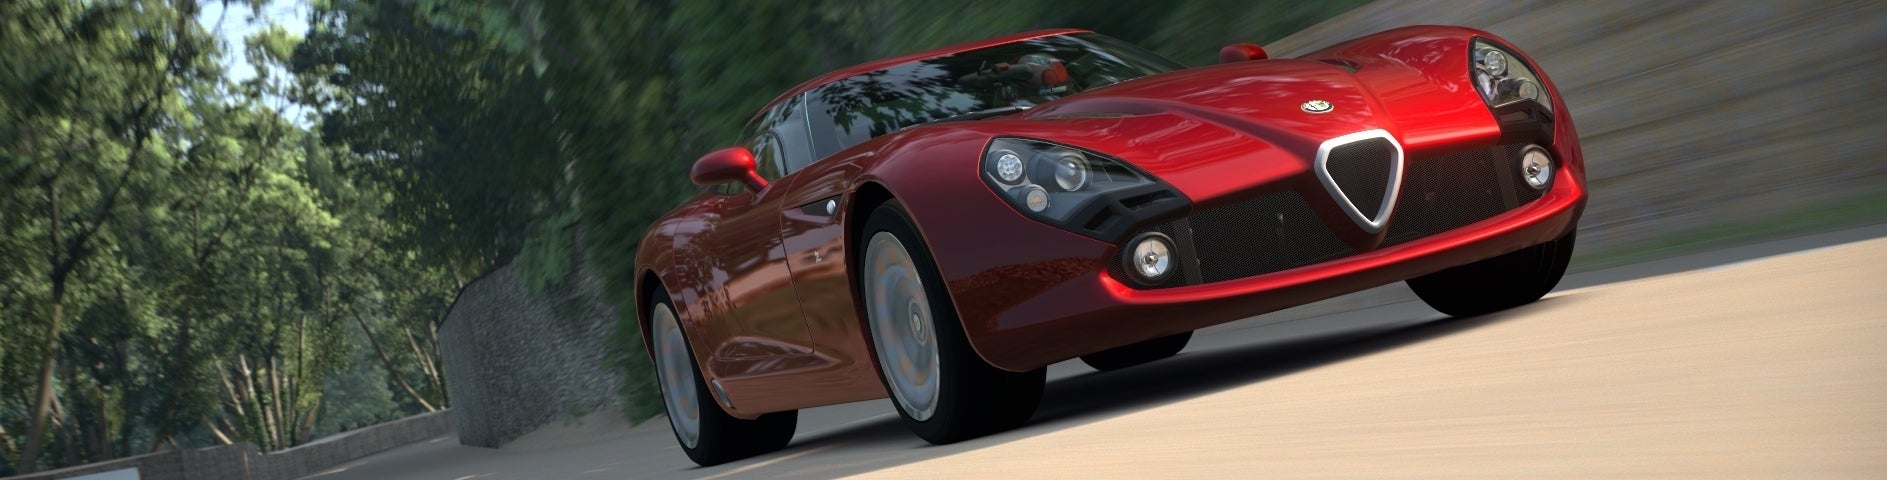 Afbeeldingen van "Gran Turismo 7 voor PlayStation 4 over twee jaar"